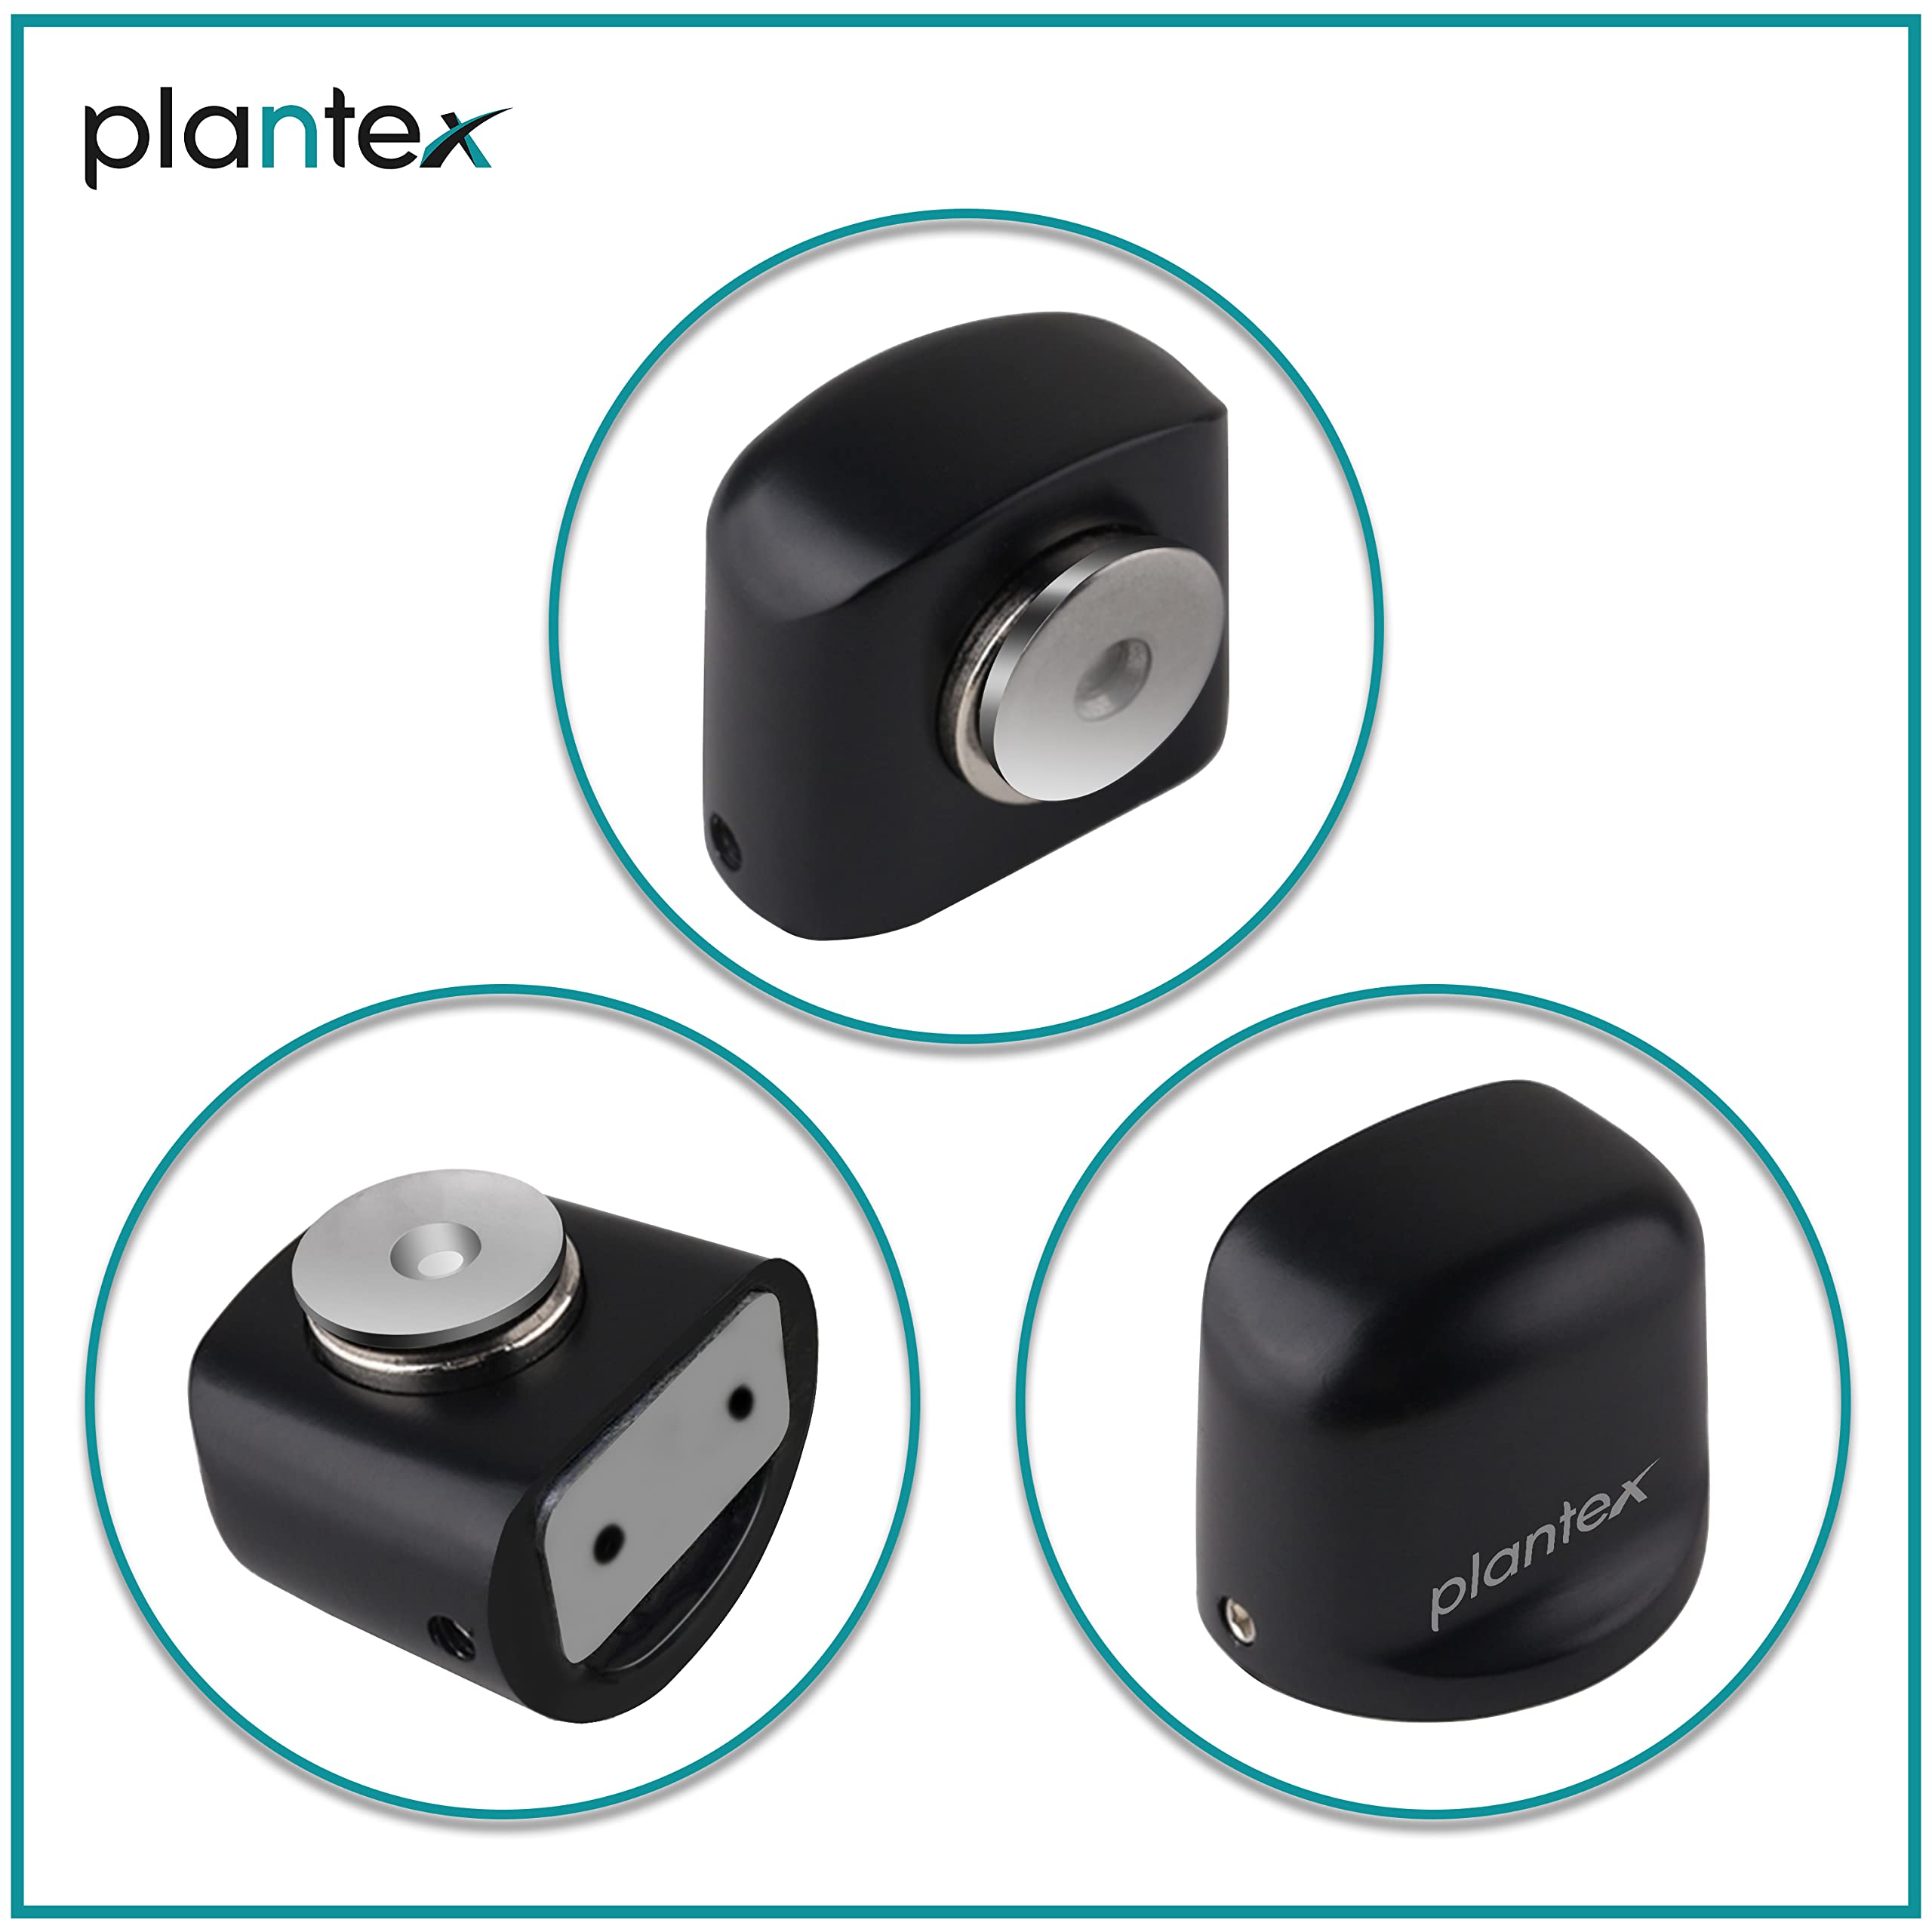 Plantex Heavy Duty Door Magnet Stopper/Door Catch Holder for Home/Office/Hotel, Floor Mounted Soft-Catcher to Hold Wooden/Glass/PVC Door - Pack of 6 (193 - Black)